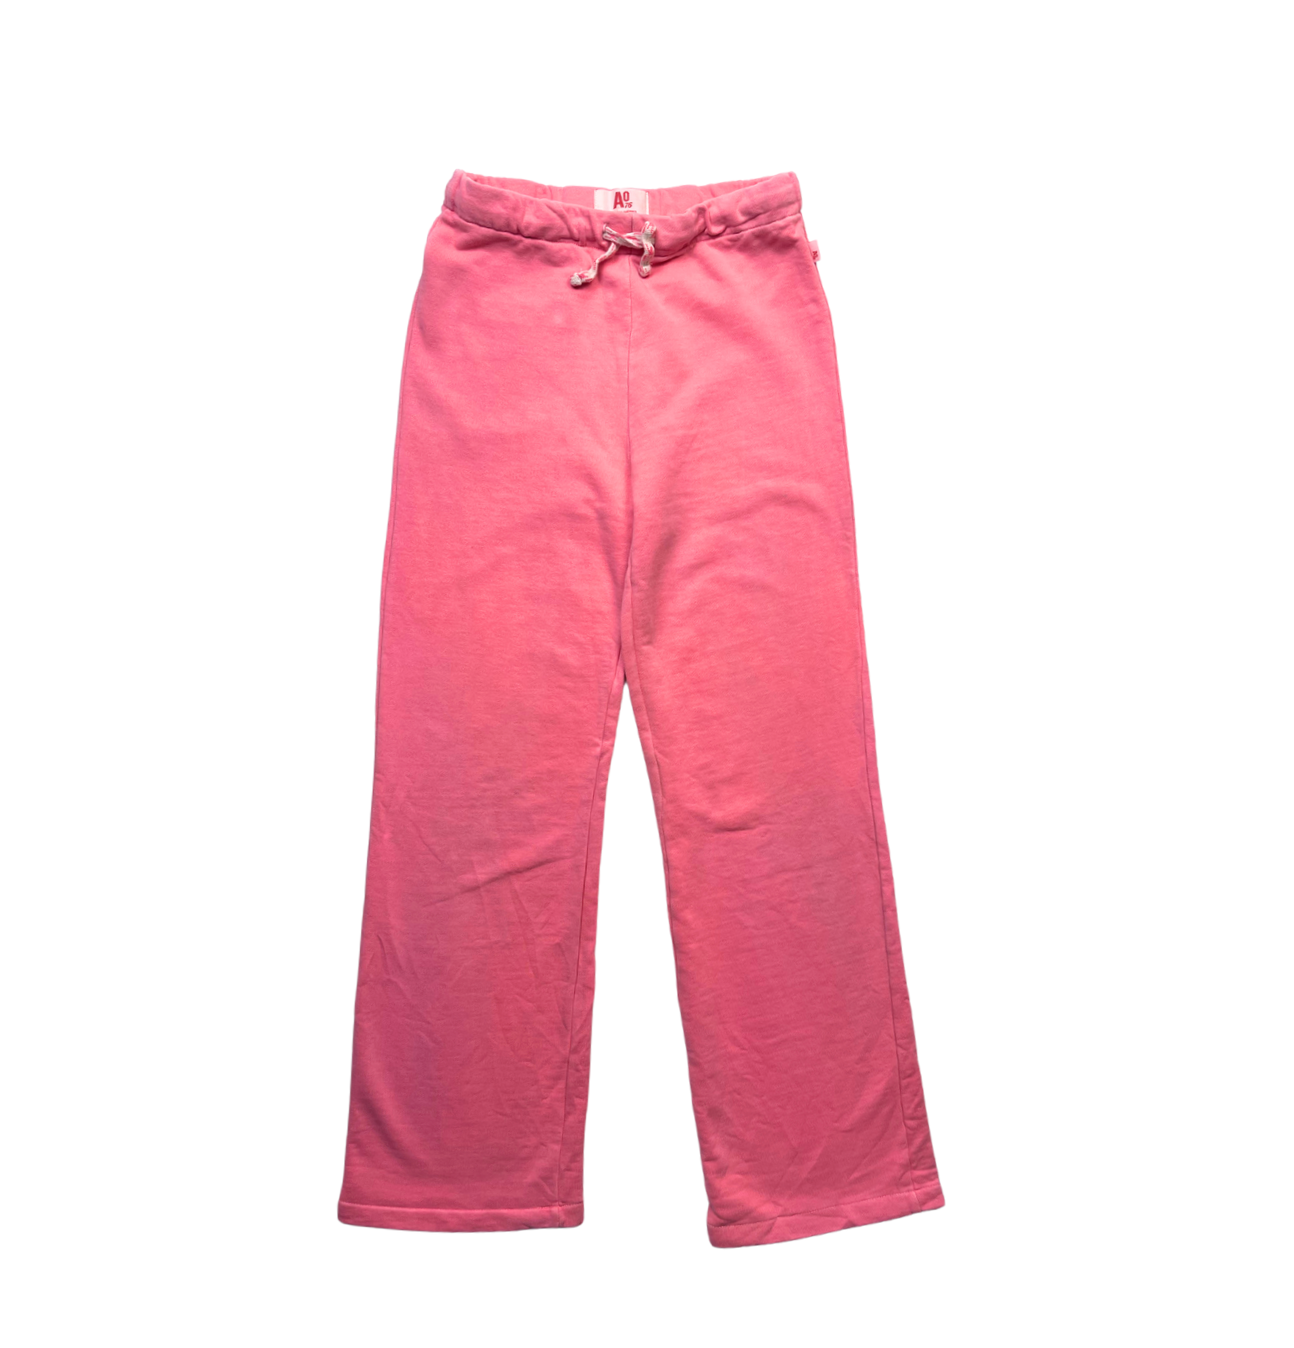 AO76 - Pantalon de survêtement droit rose - 10 ans